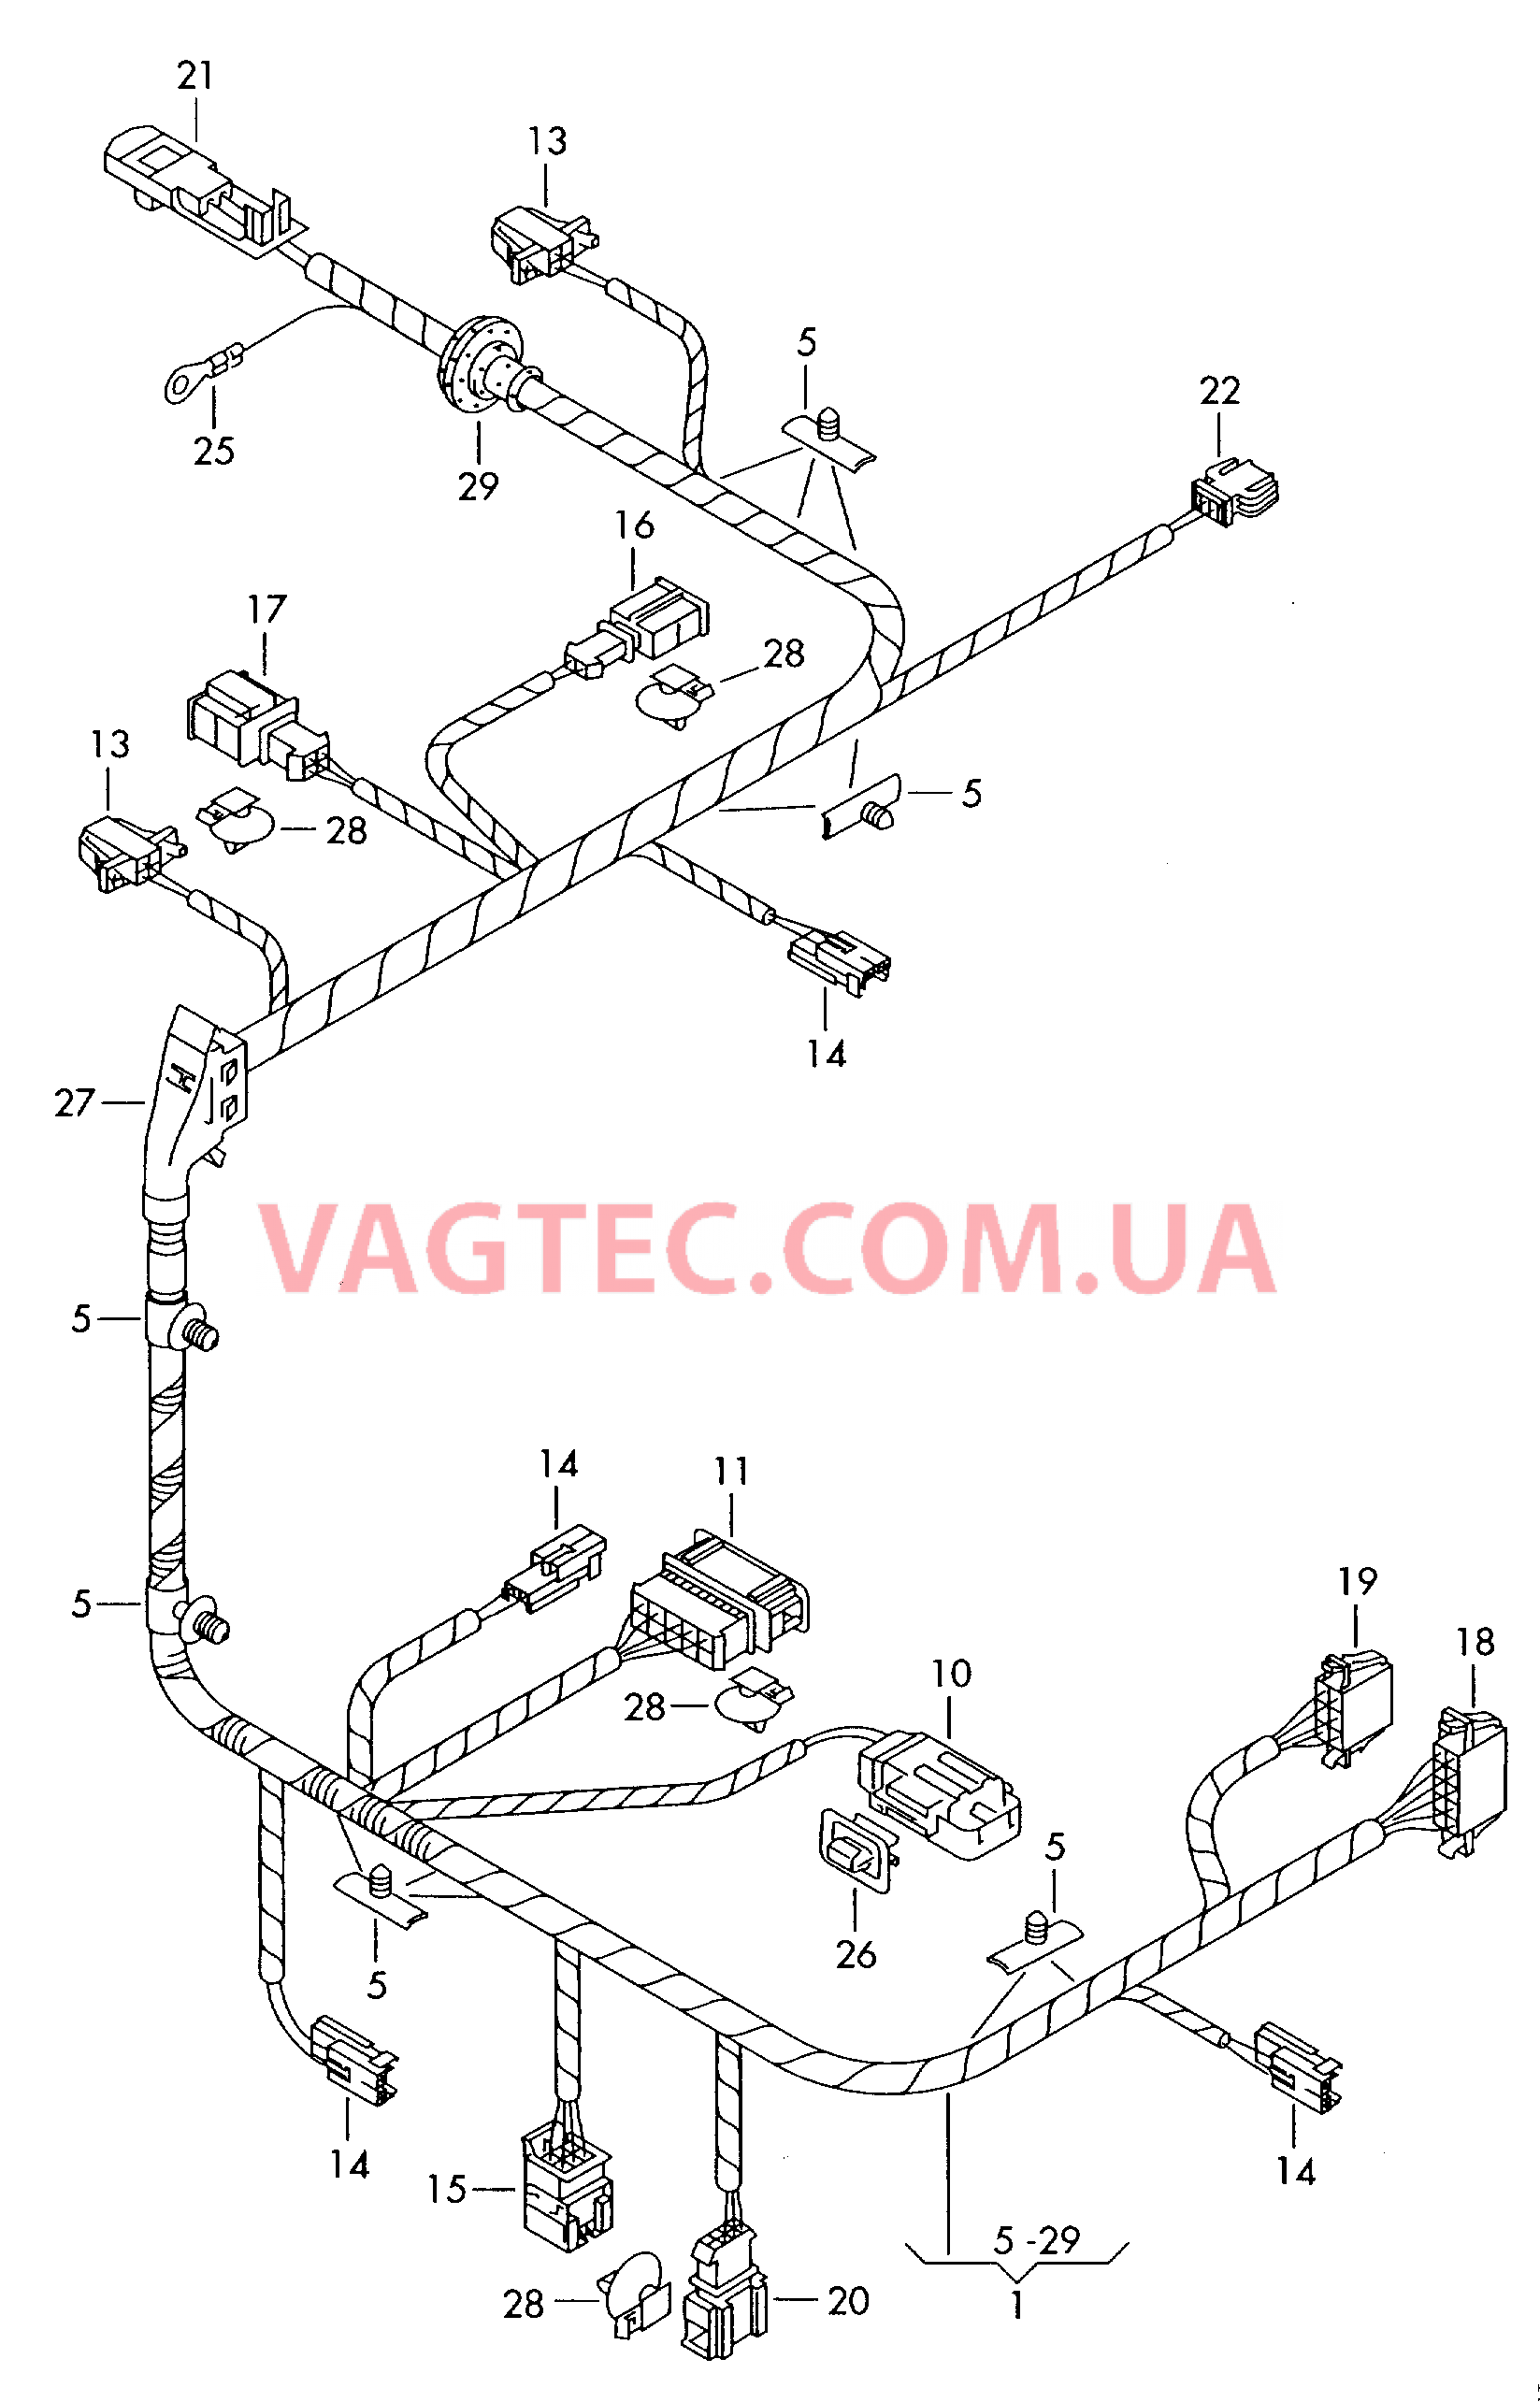 Жгут проводов сиденьяс электрорегулировкой  для а/м с 12-позиционной электрической регулировкой сидений  для VOLKSWAGEN Phaeton 2005